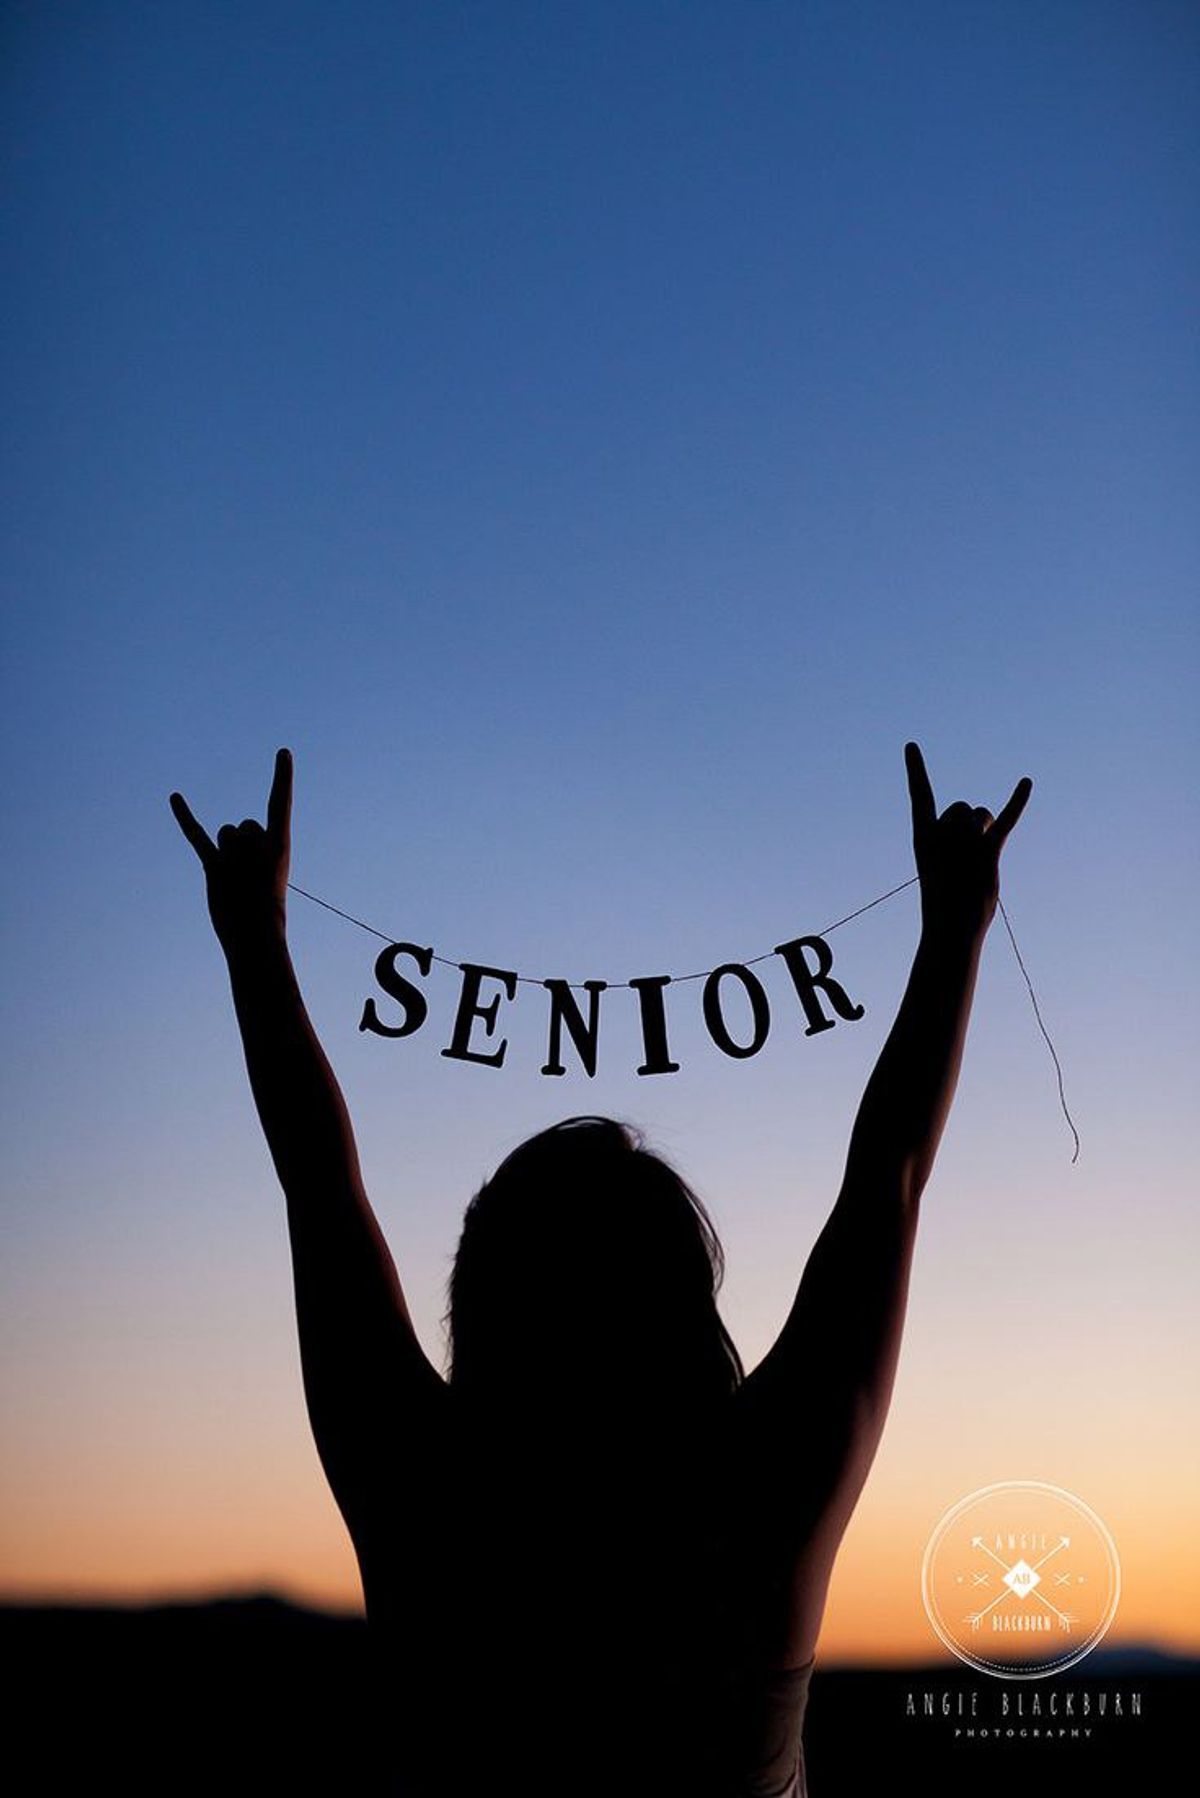 5 Ways to Survive Senior Year